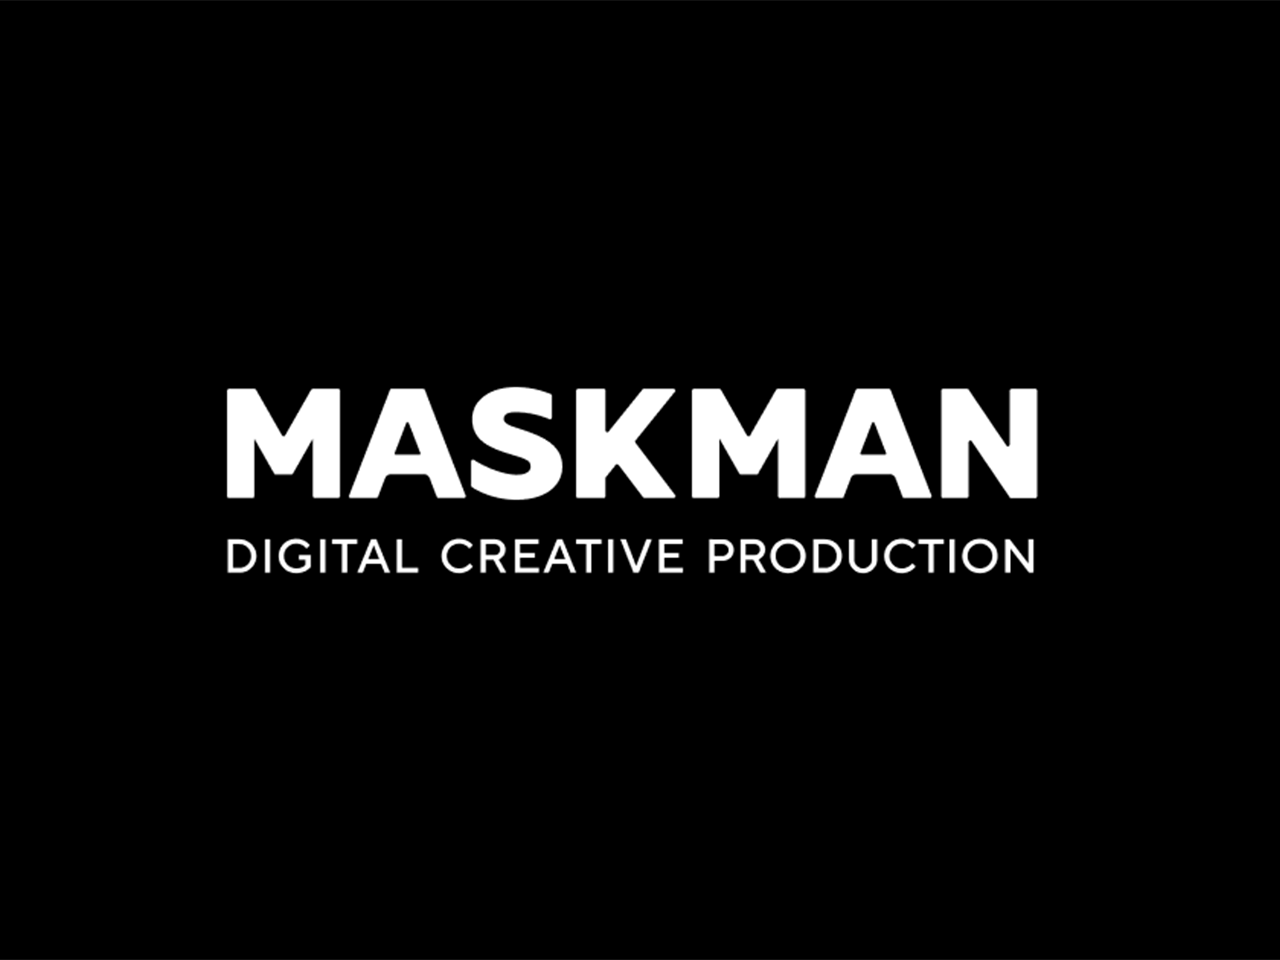 株式会社マスクマンは、Web制作やアプリ開発、デジタルサイネージなど、デジタルインタラクティブを主業務とする制作会社です。